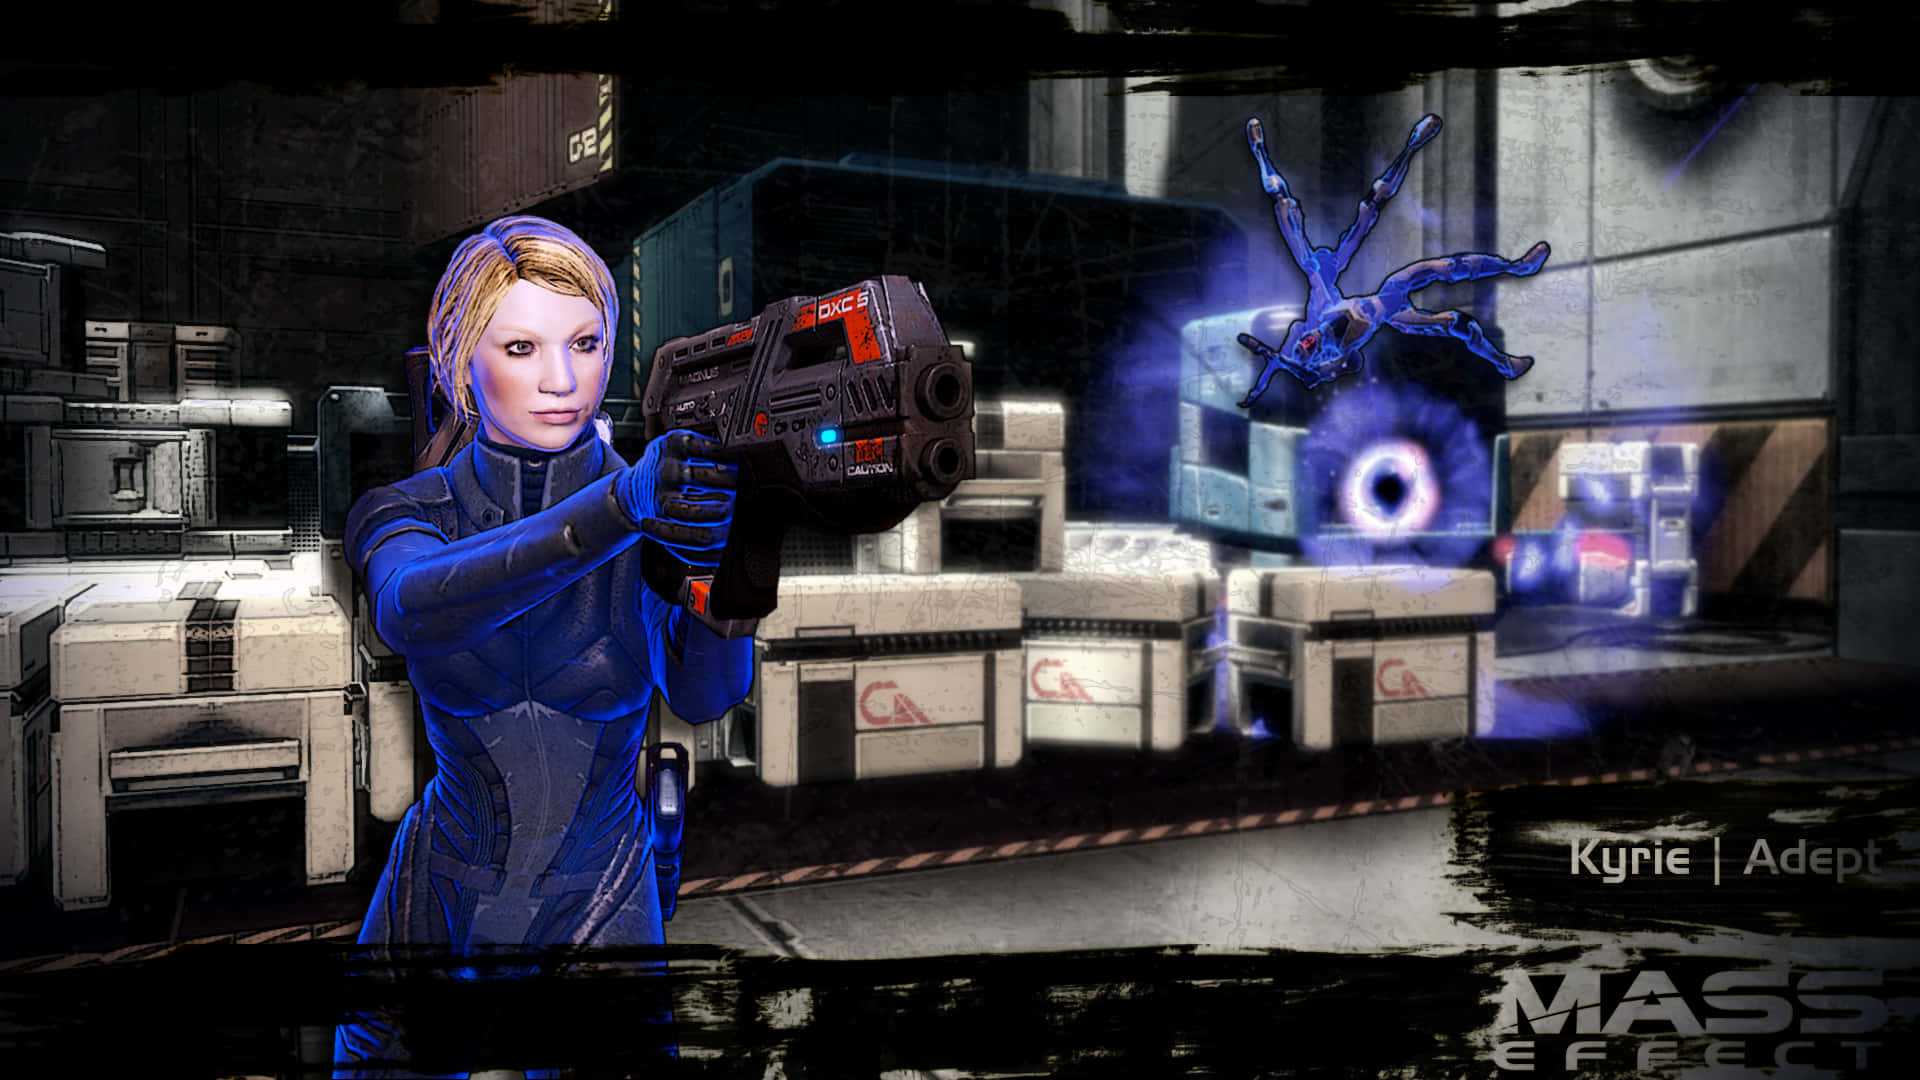 Kyrie An Adept In Mass Effect 3 Wallpaper